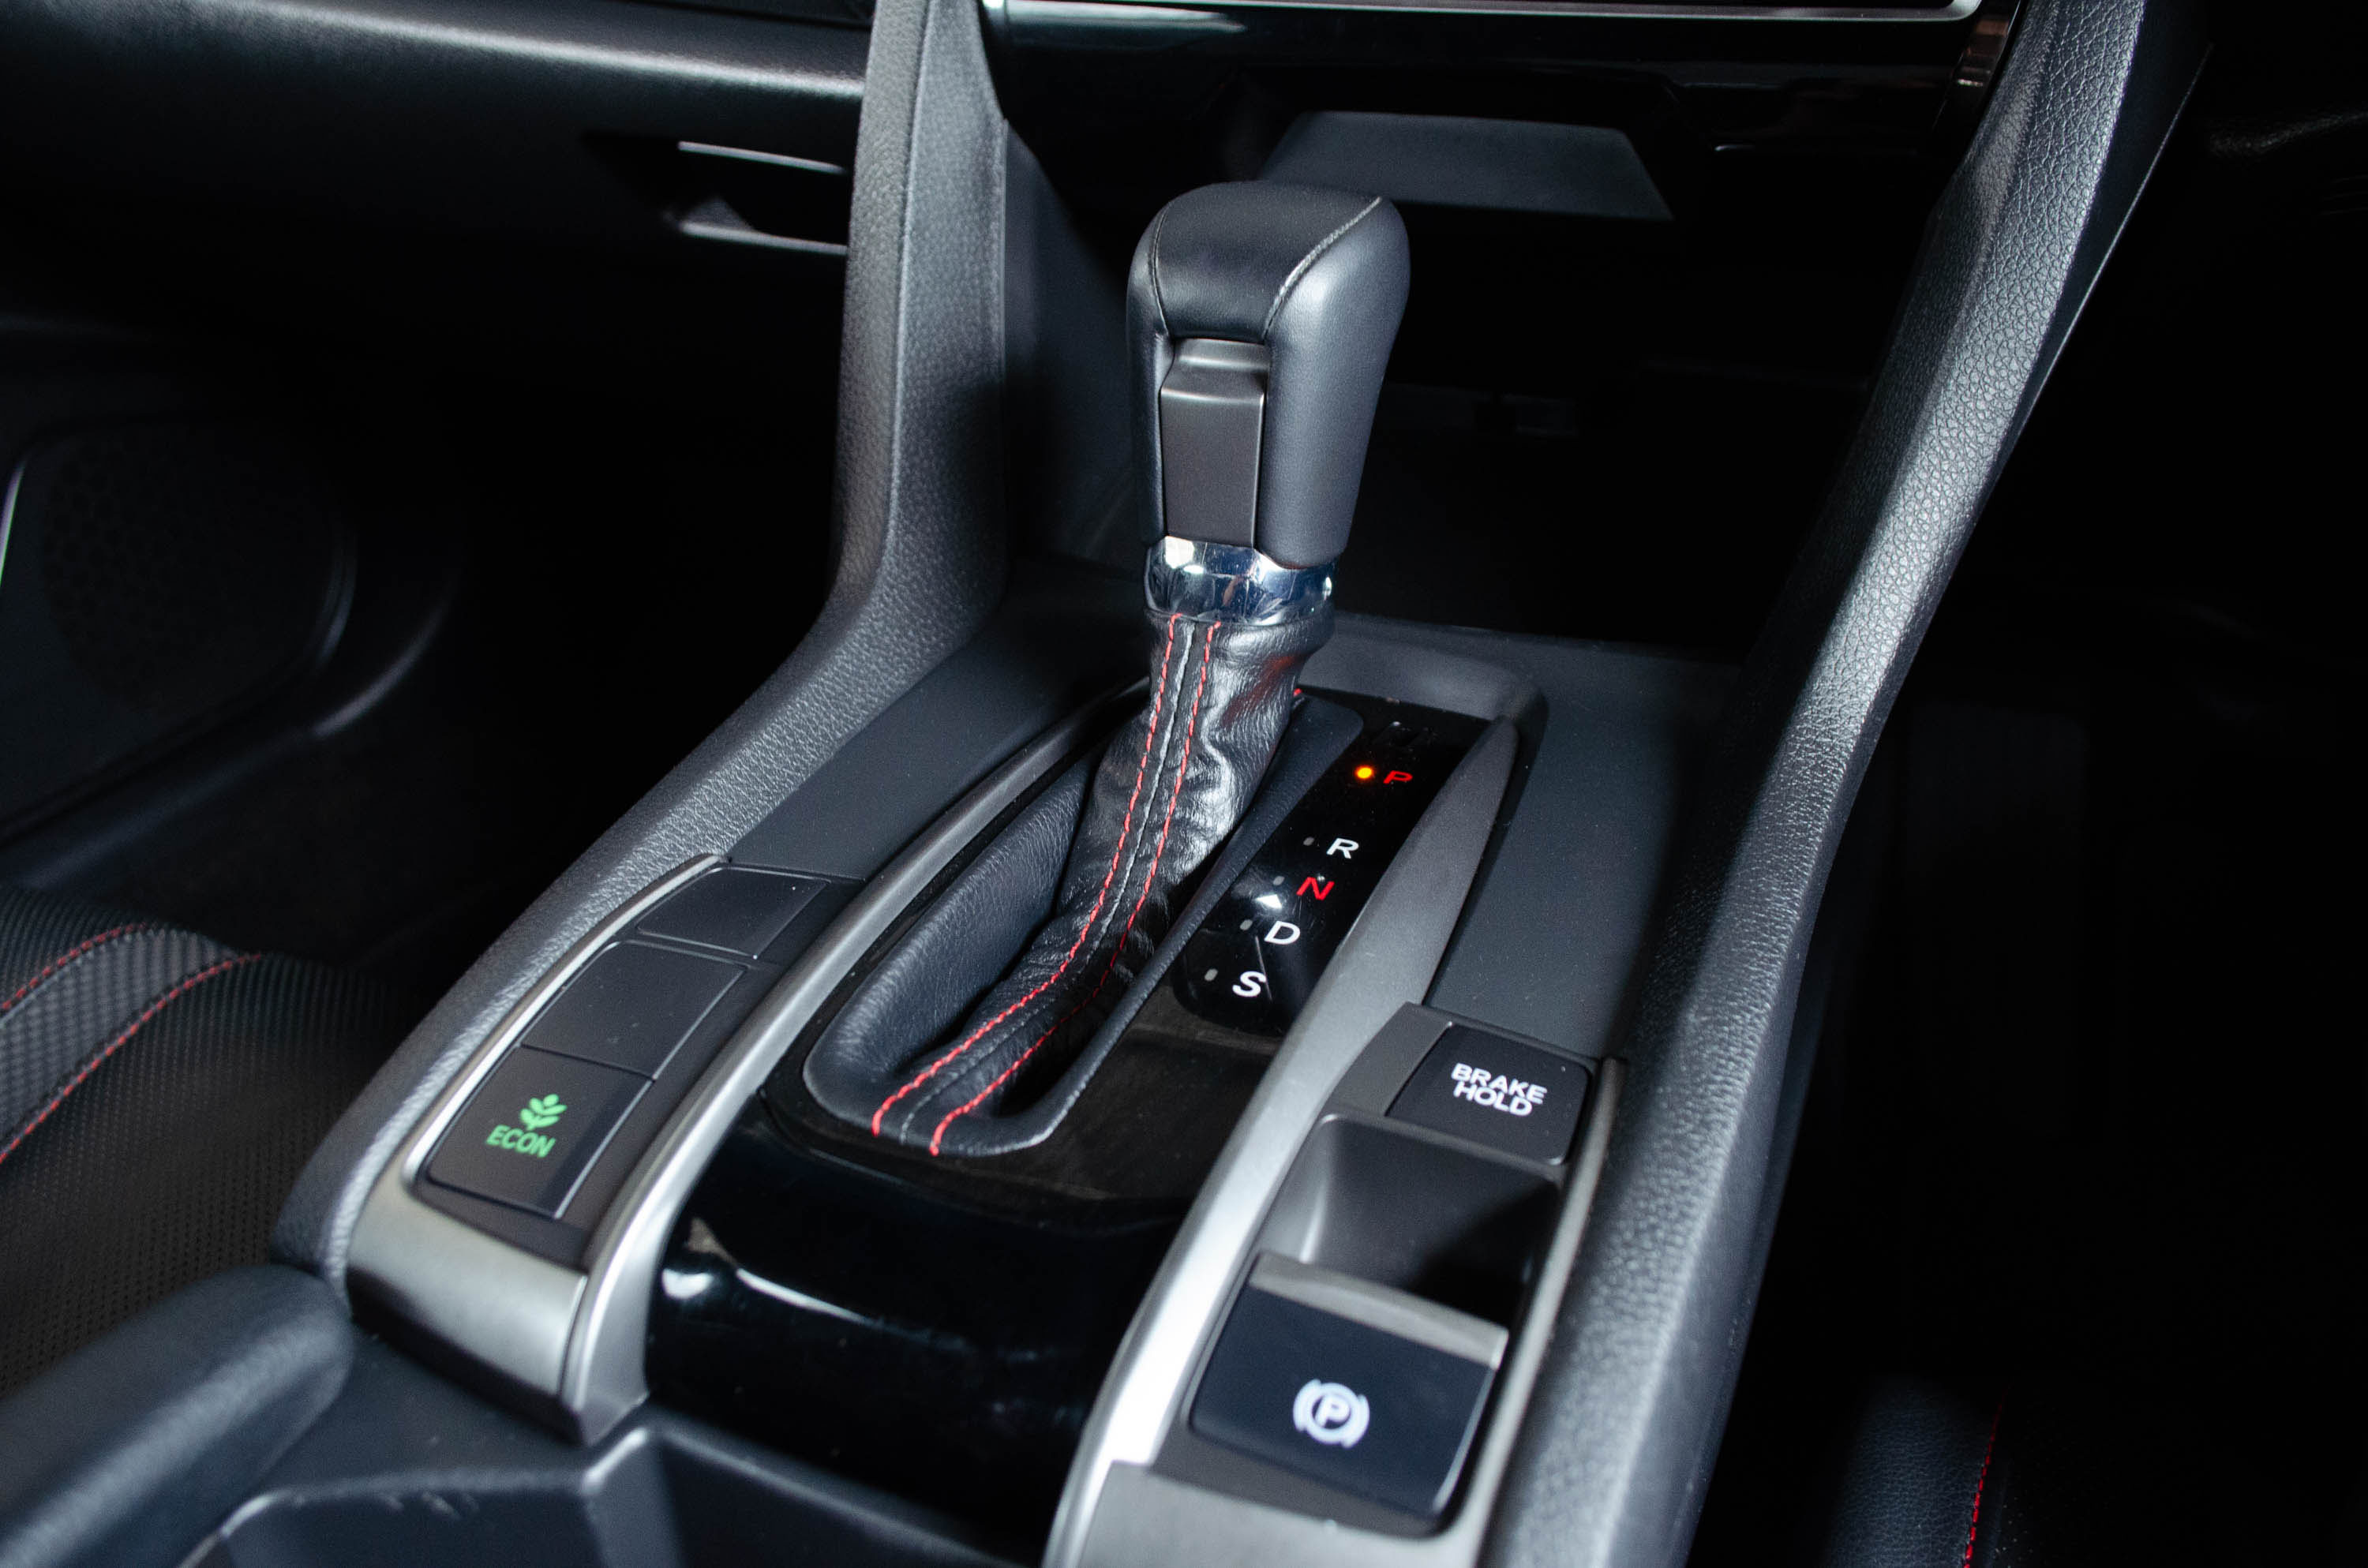 Honda Civic 1.5 Turbo RS Hatch 2020 LK0183